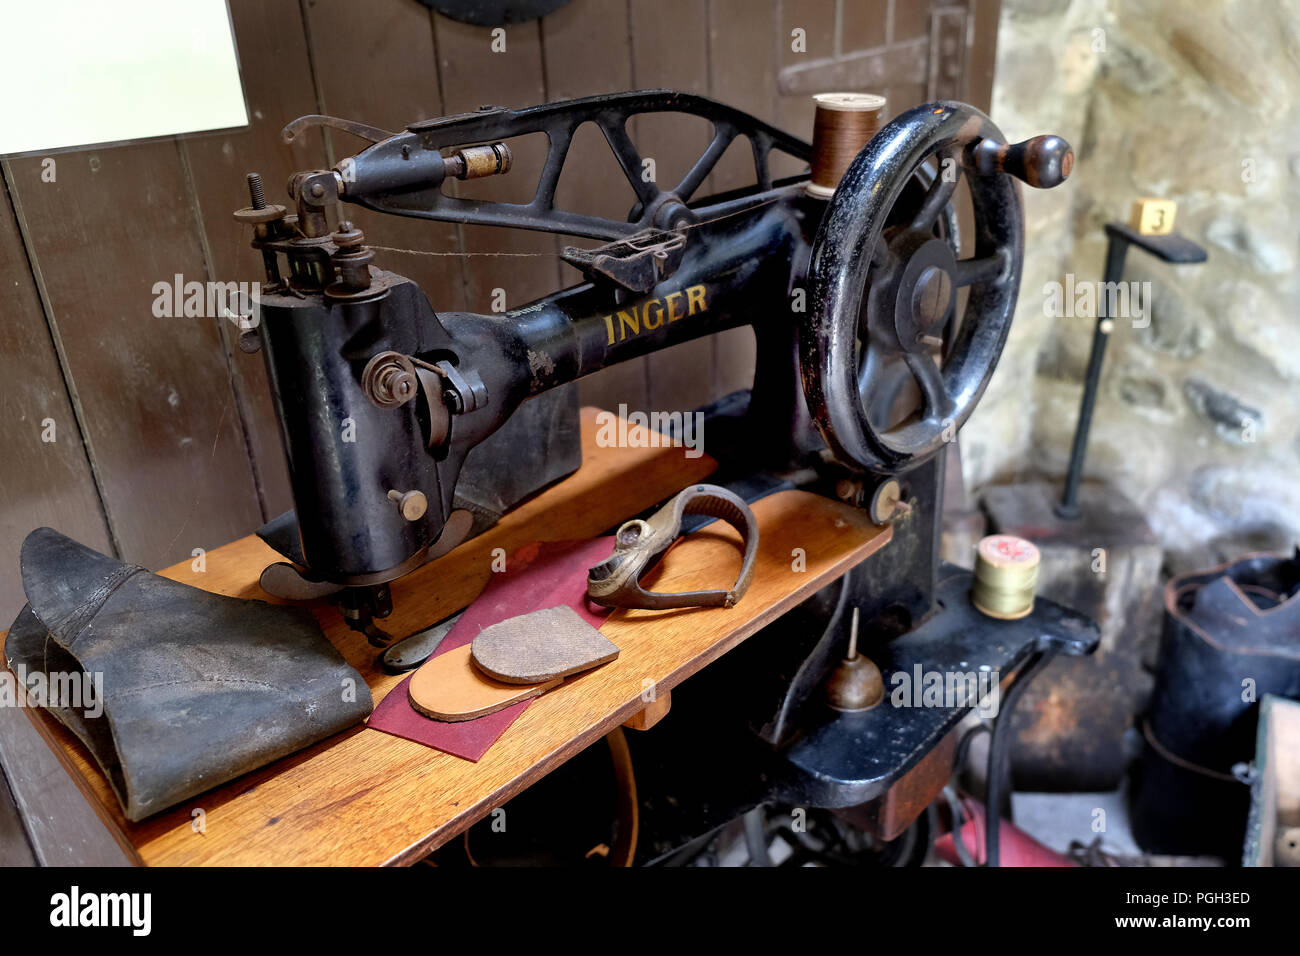 Vintage heavy duty Nähmaschine für Leder und schwere Material  Stockfotografie - Alamy